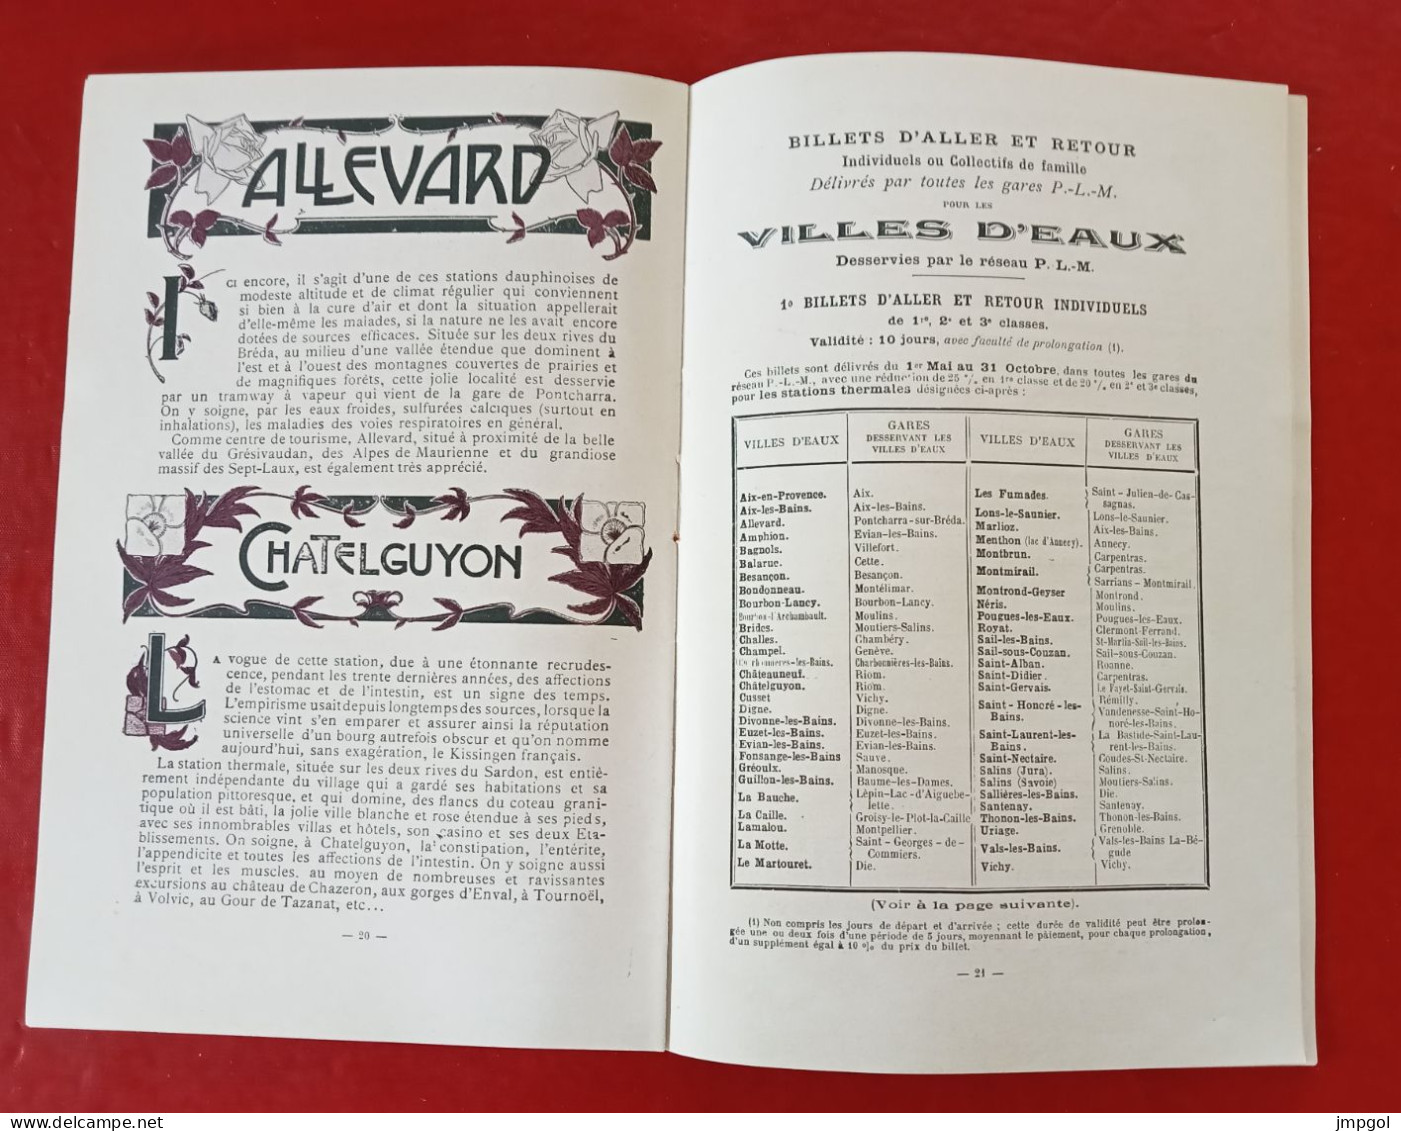 Guide Saison Thermale 1906 Chemins de Fer PLM Vichy Uriage Royat Evian Allevard.... Billets Voyages Circulaires Tarifs